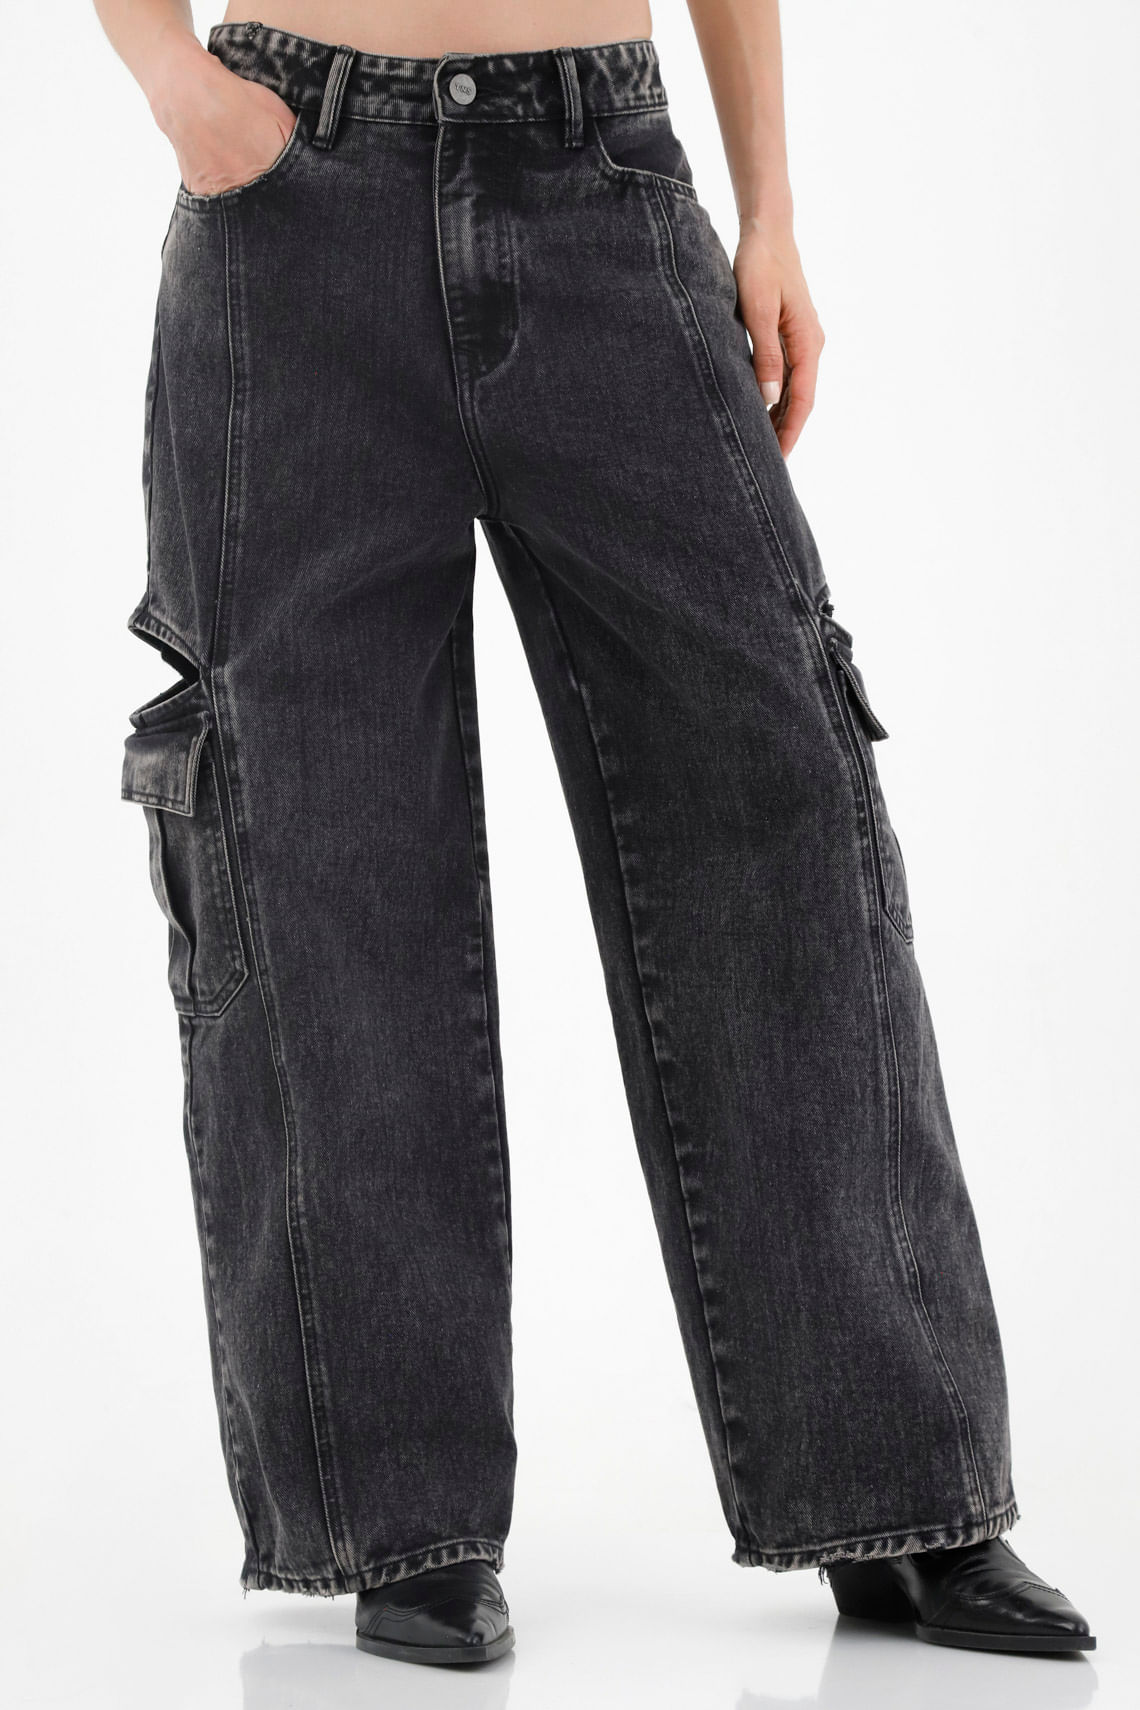 Las mejores ofertas en Jegging Jeans Negros para Mujer